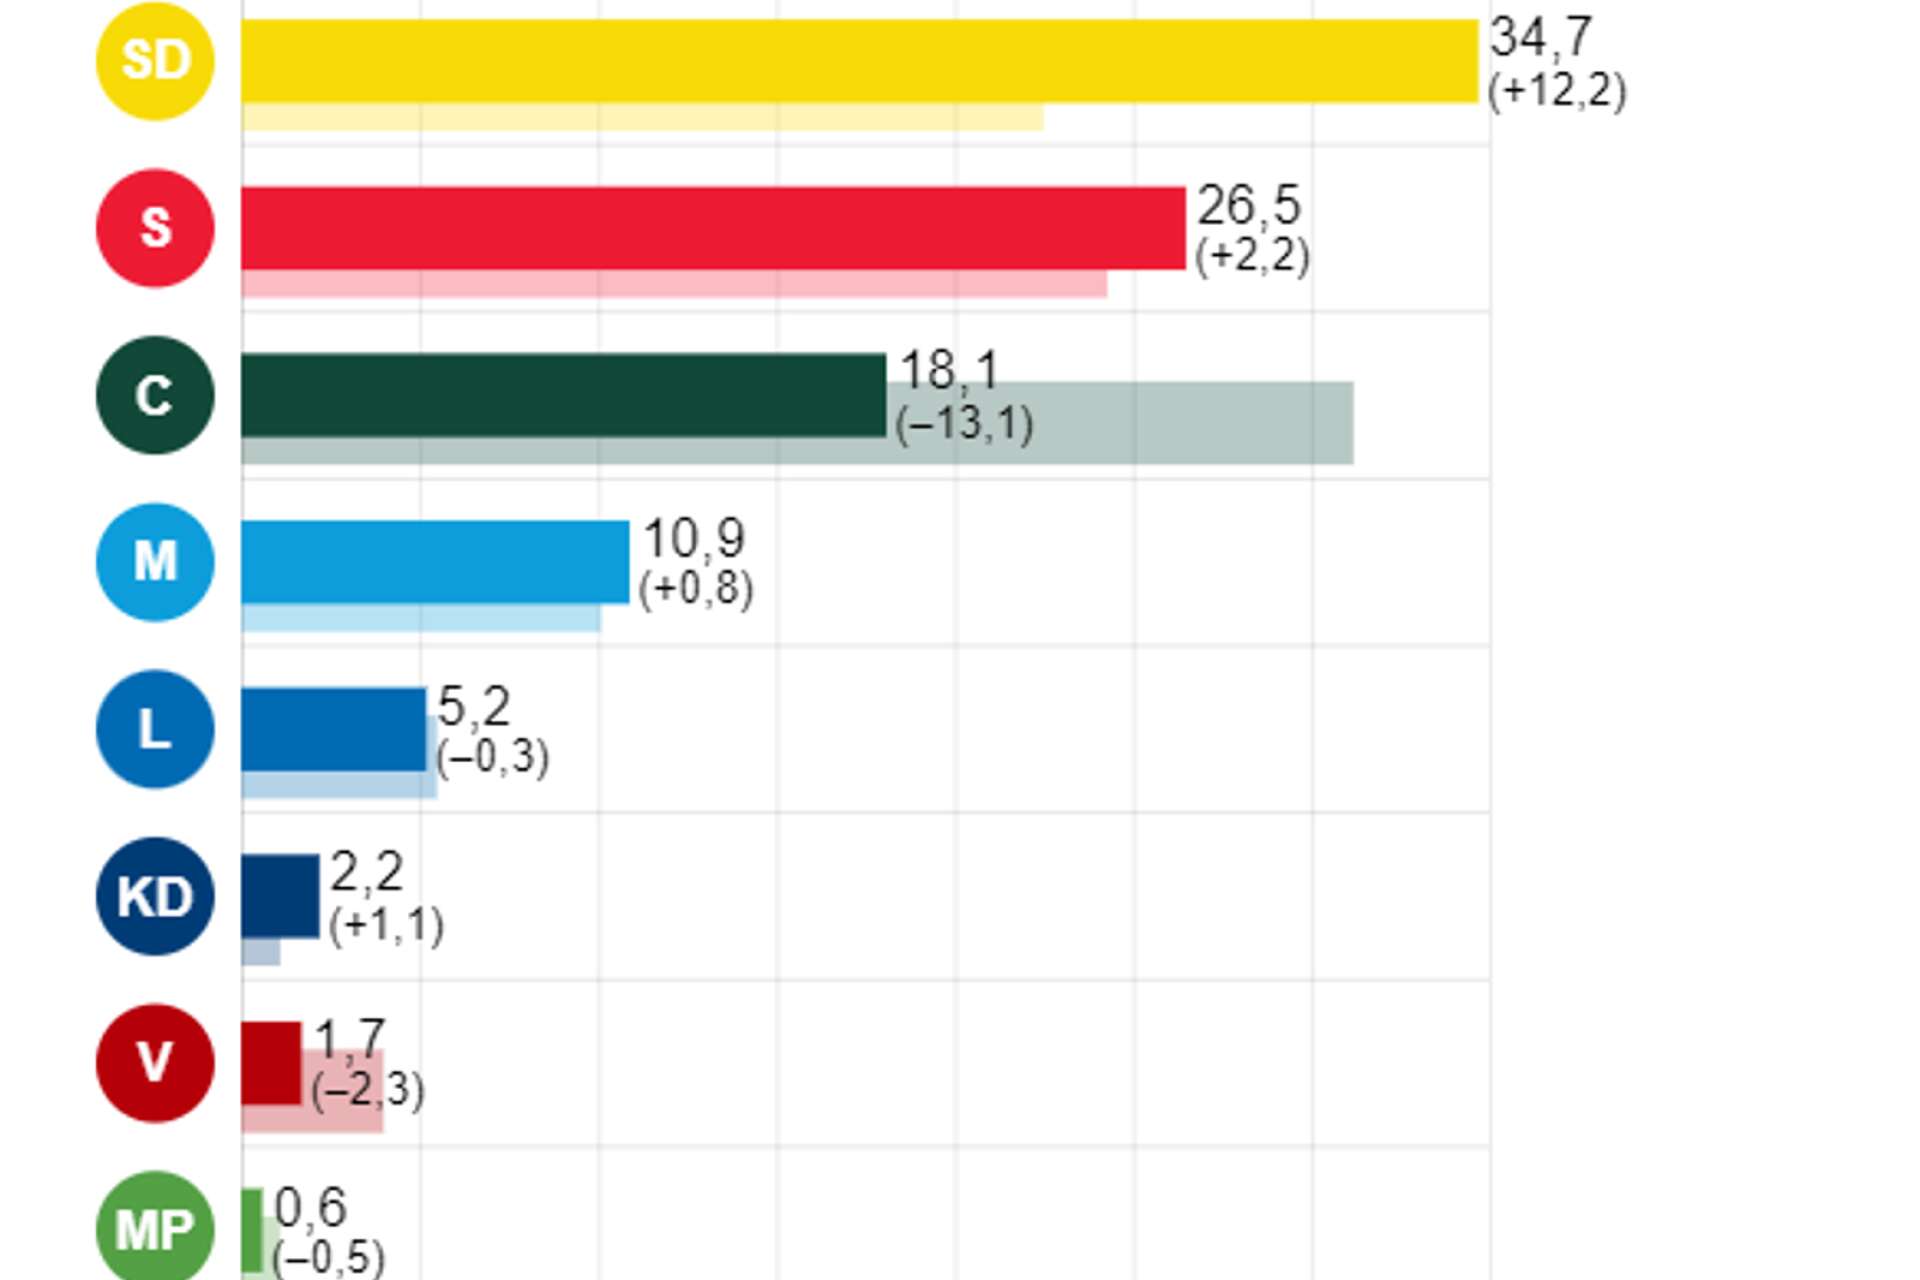 SD är just nu största parti i kommunen med 34,7 procent före S på 26,5 procent. C gör ett historiskt ras med 13,1 procent och fick 18,1 procent av rösterna.